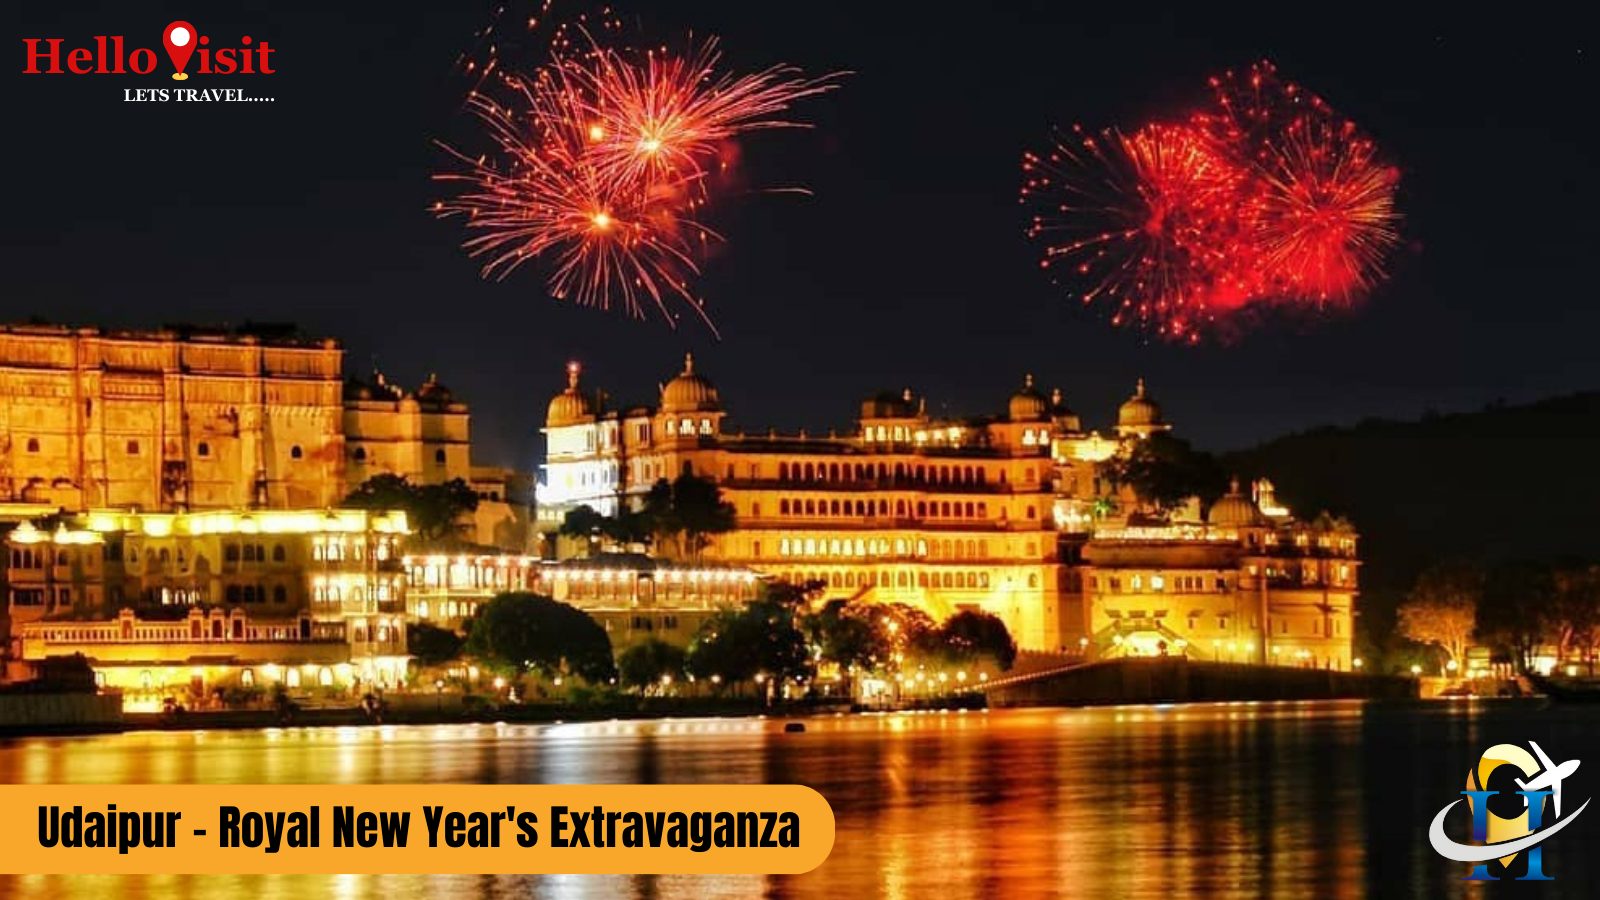 Udaipur - Royal New Year's Extravaganza